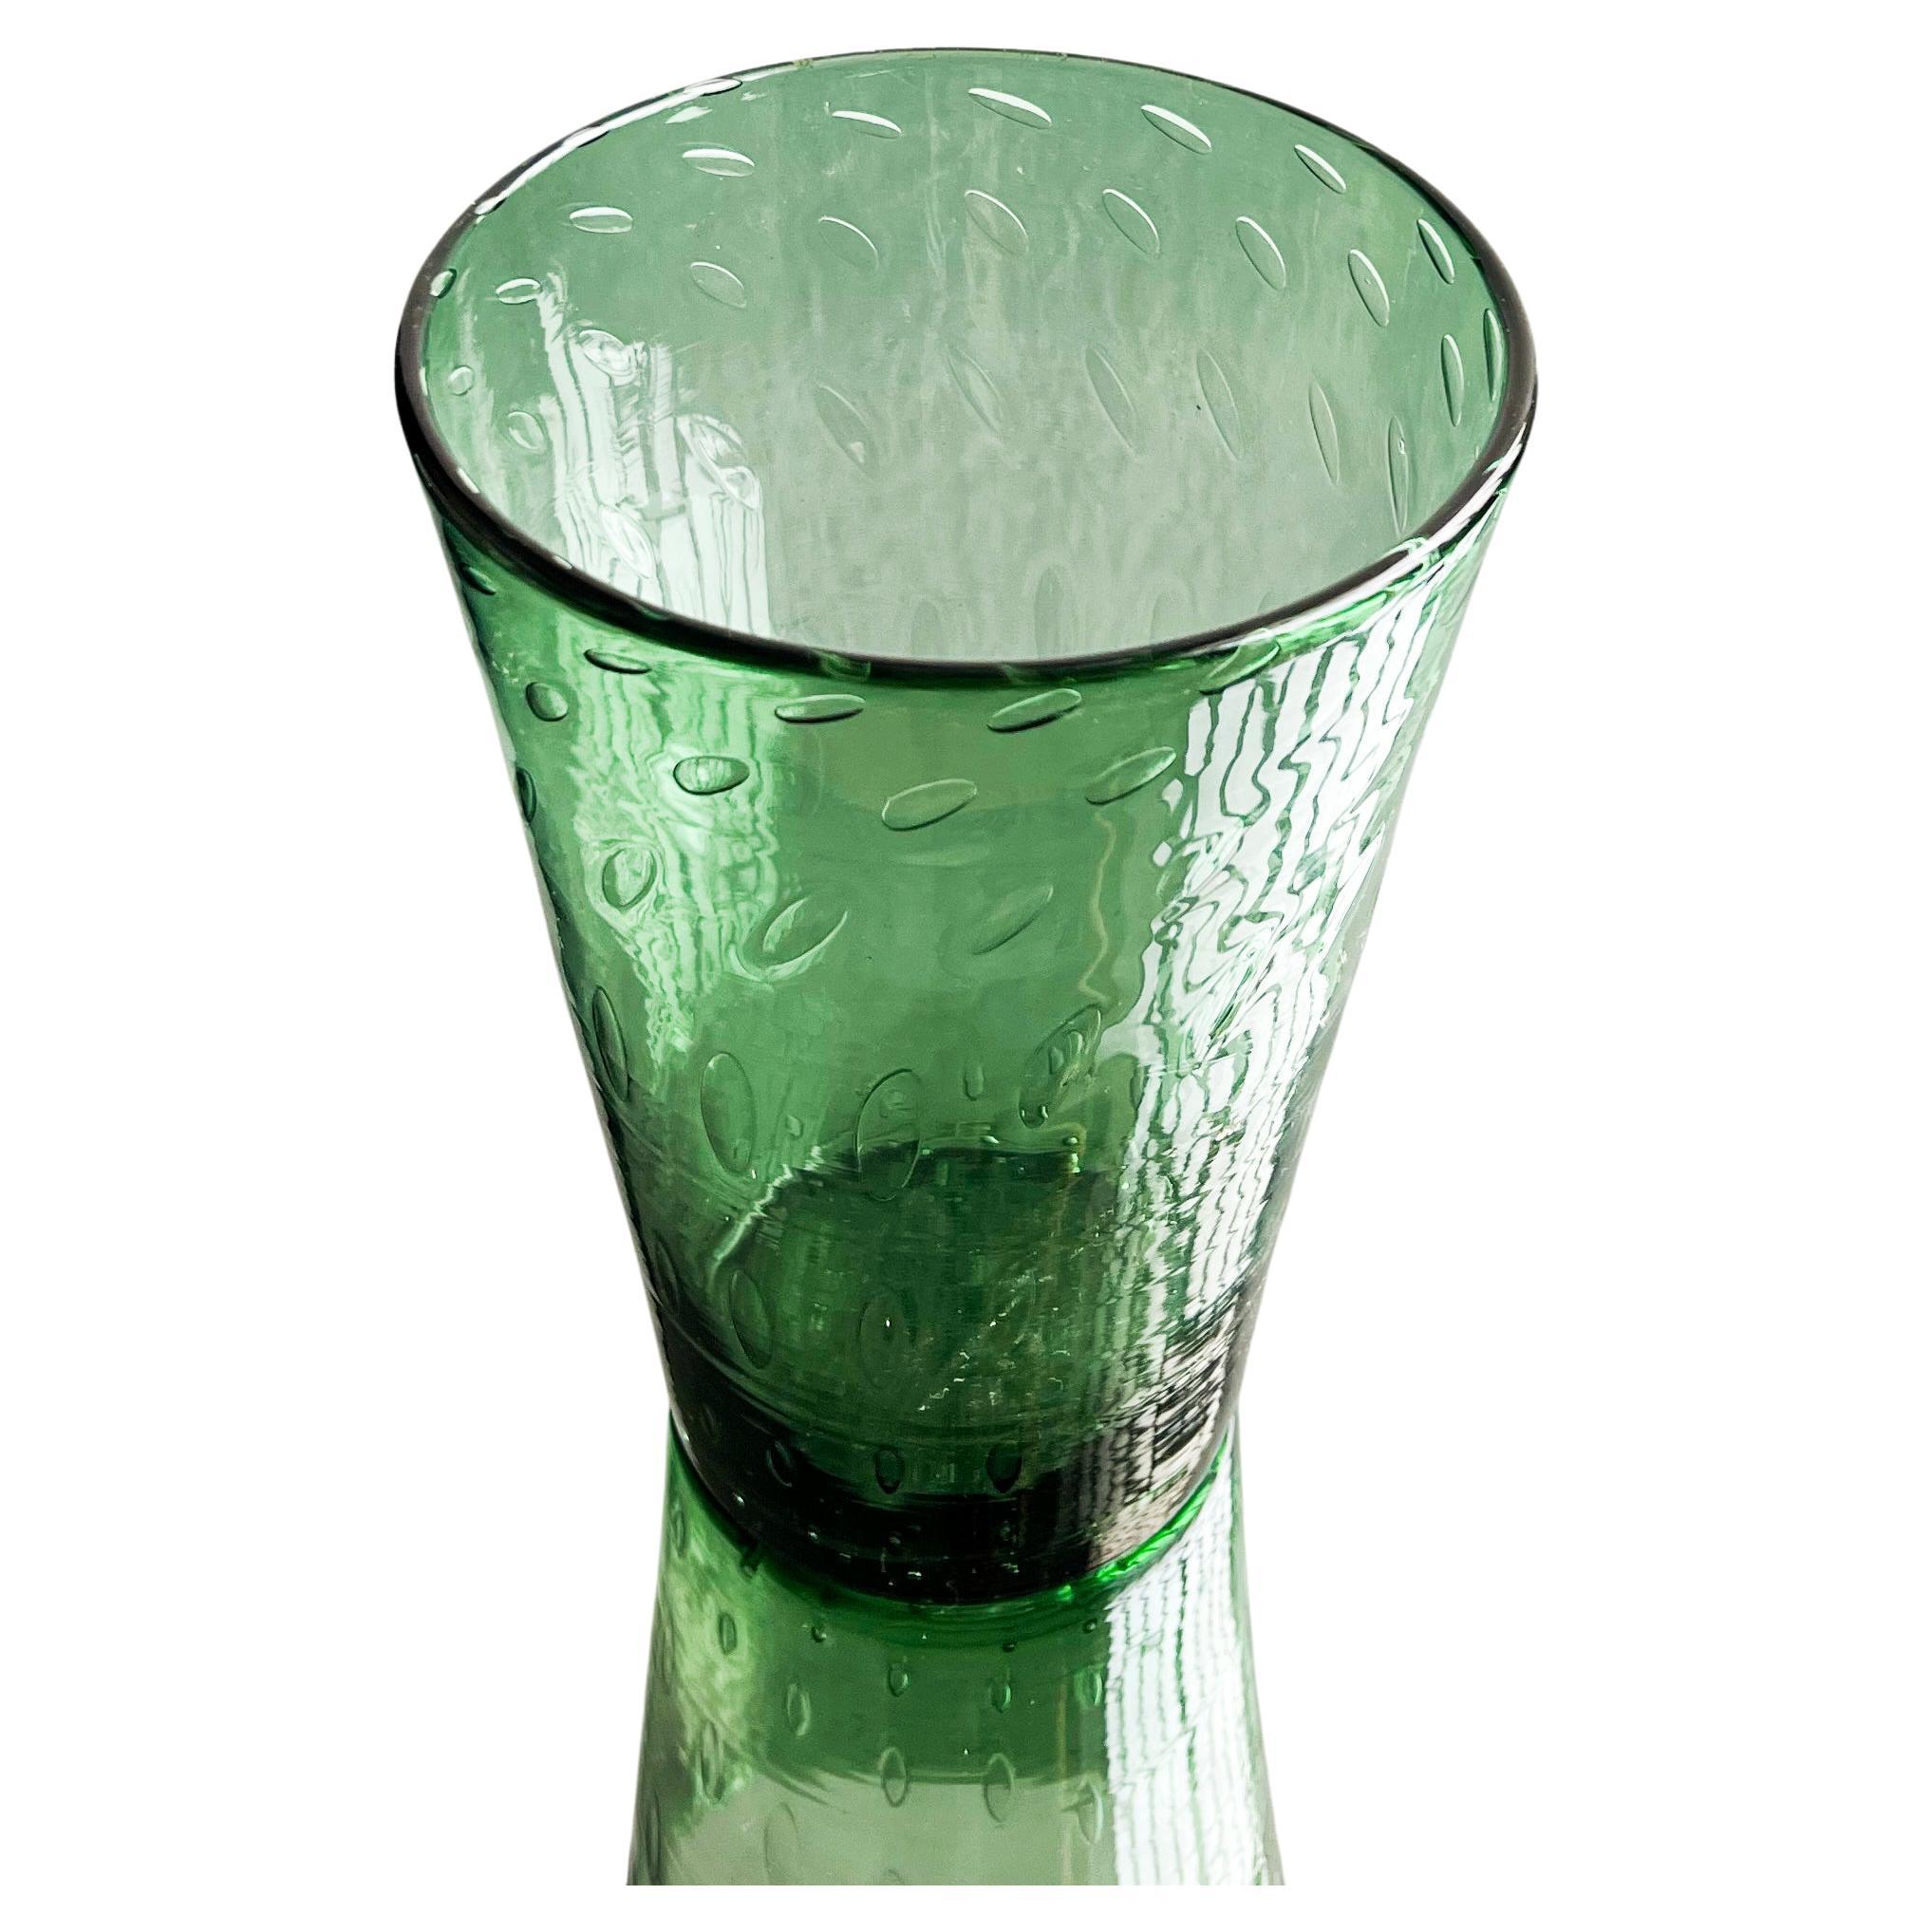 Decorative Vase in Green Bullicante Glass, Vetrerie di Empoli, Italian Design